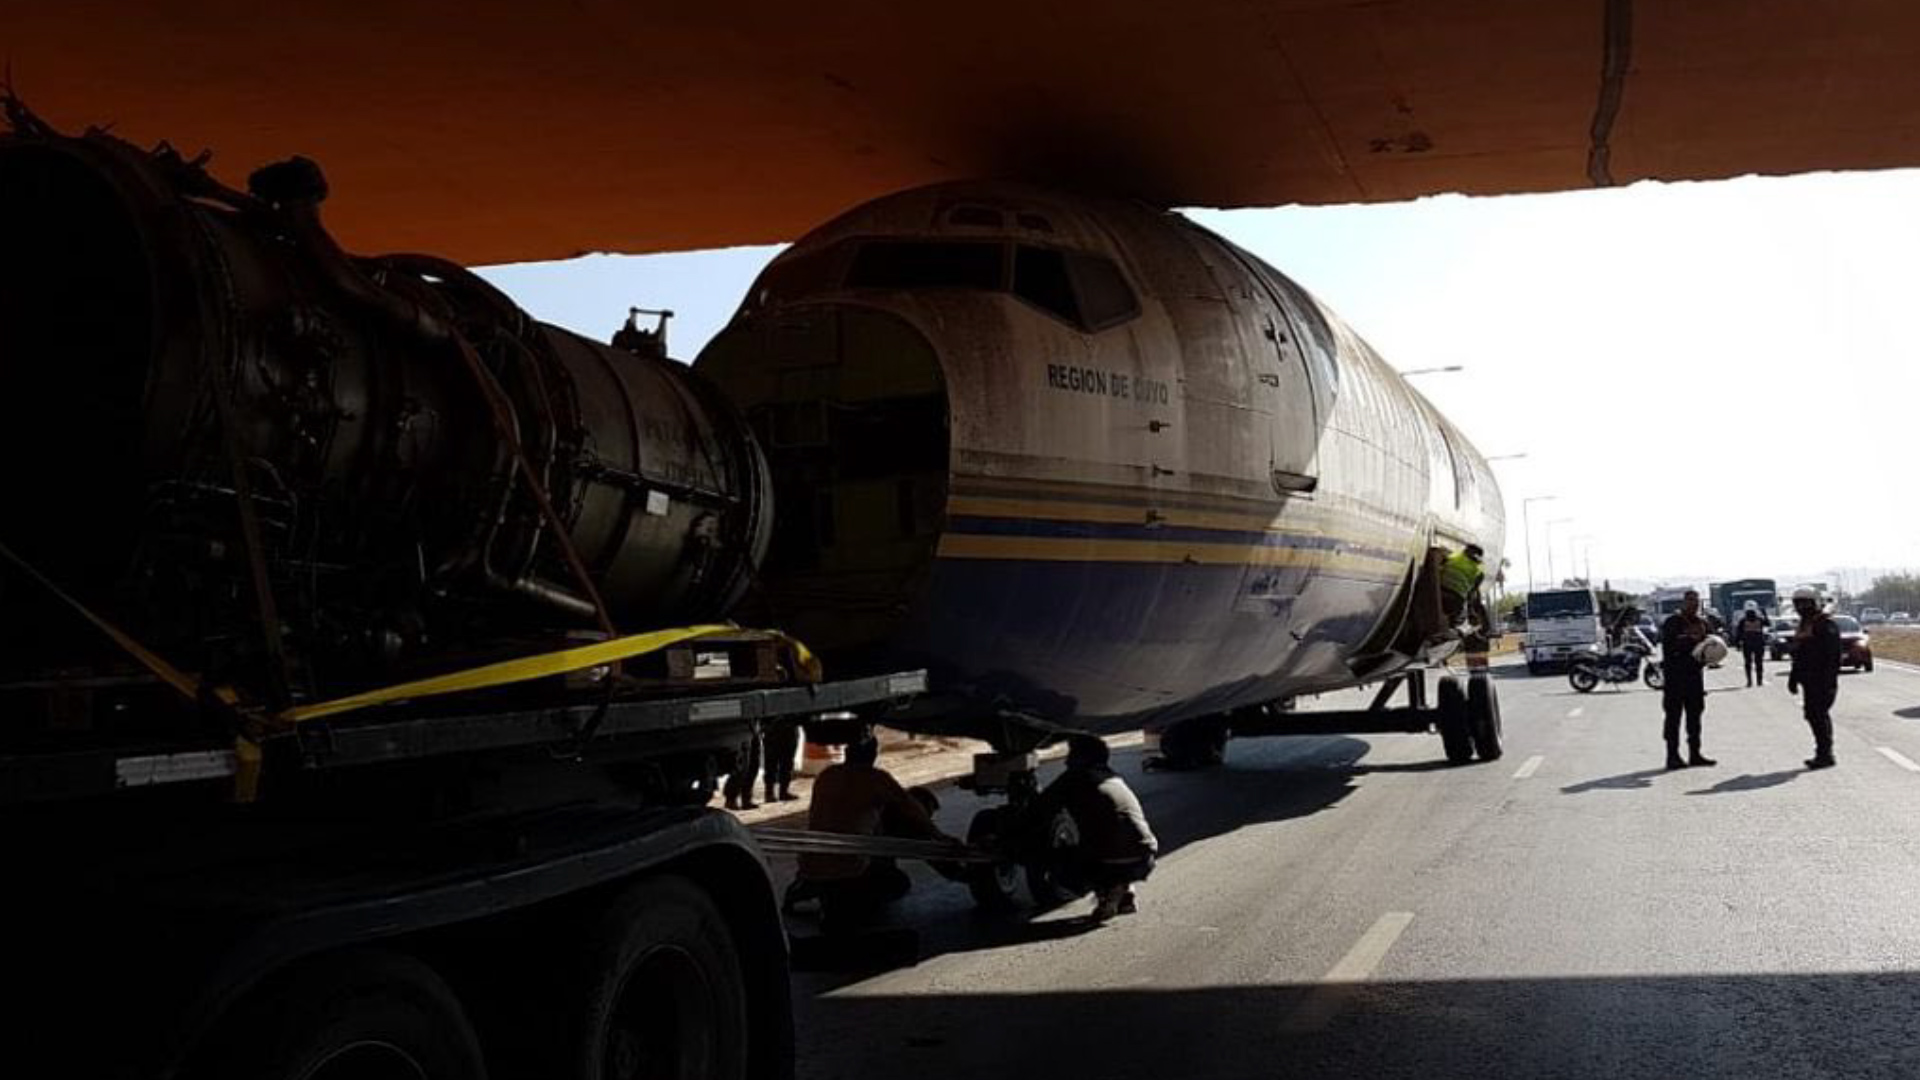 El avión estuvo abandonado 17 años en el aeropuerto internacional de Córdoba. (Twitter)